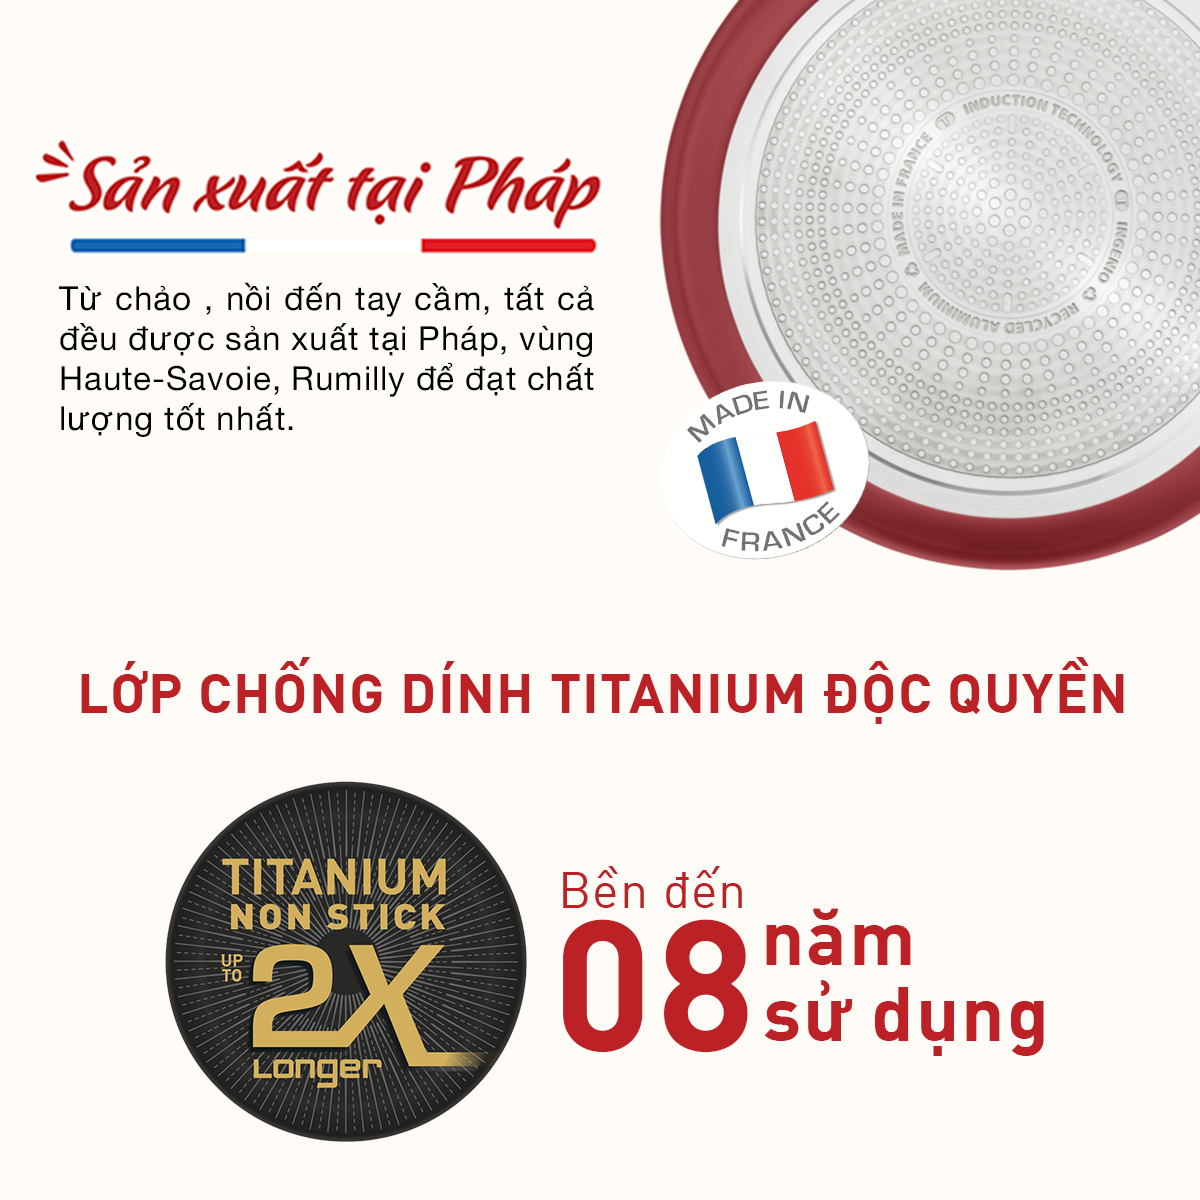 [Made in France] Bộ nồi chảo cán rời 3 món Tefal Ingenio Daily Chef (chảo chiên 22cm, chảo chiên 26cm, tay cầm rời) - Hàng chính hãng